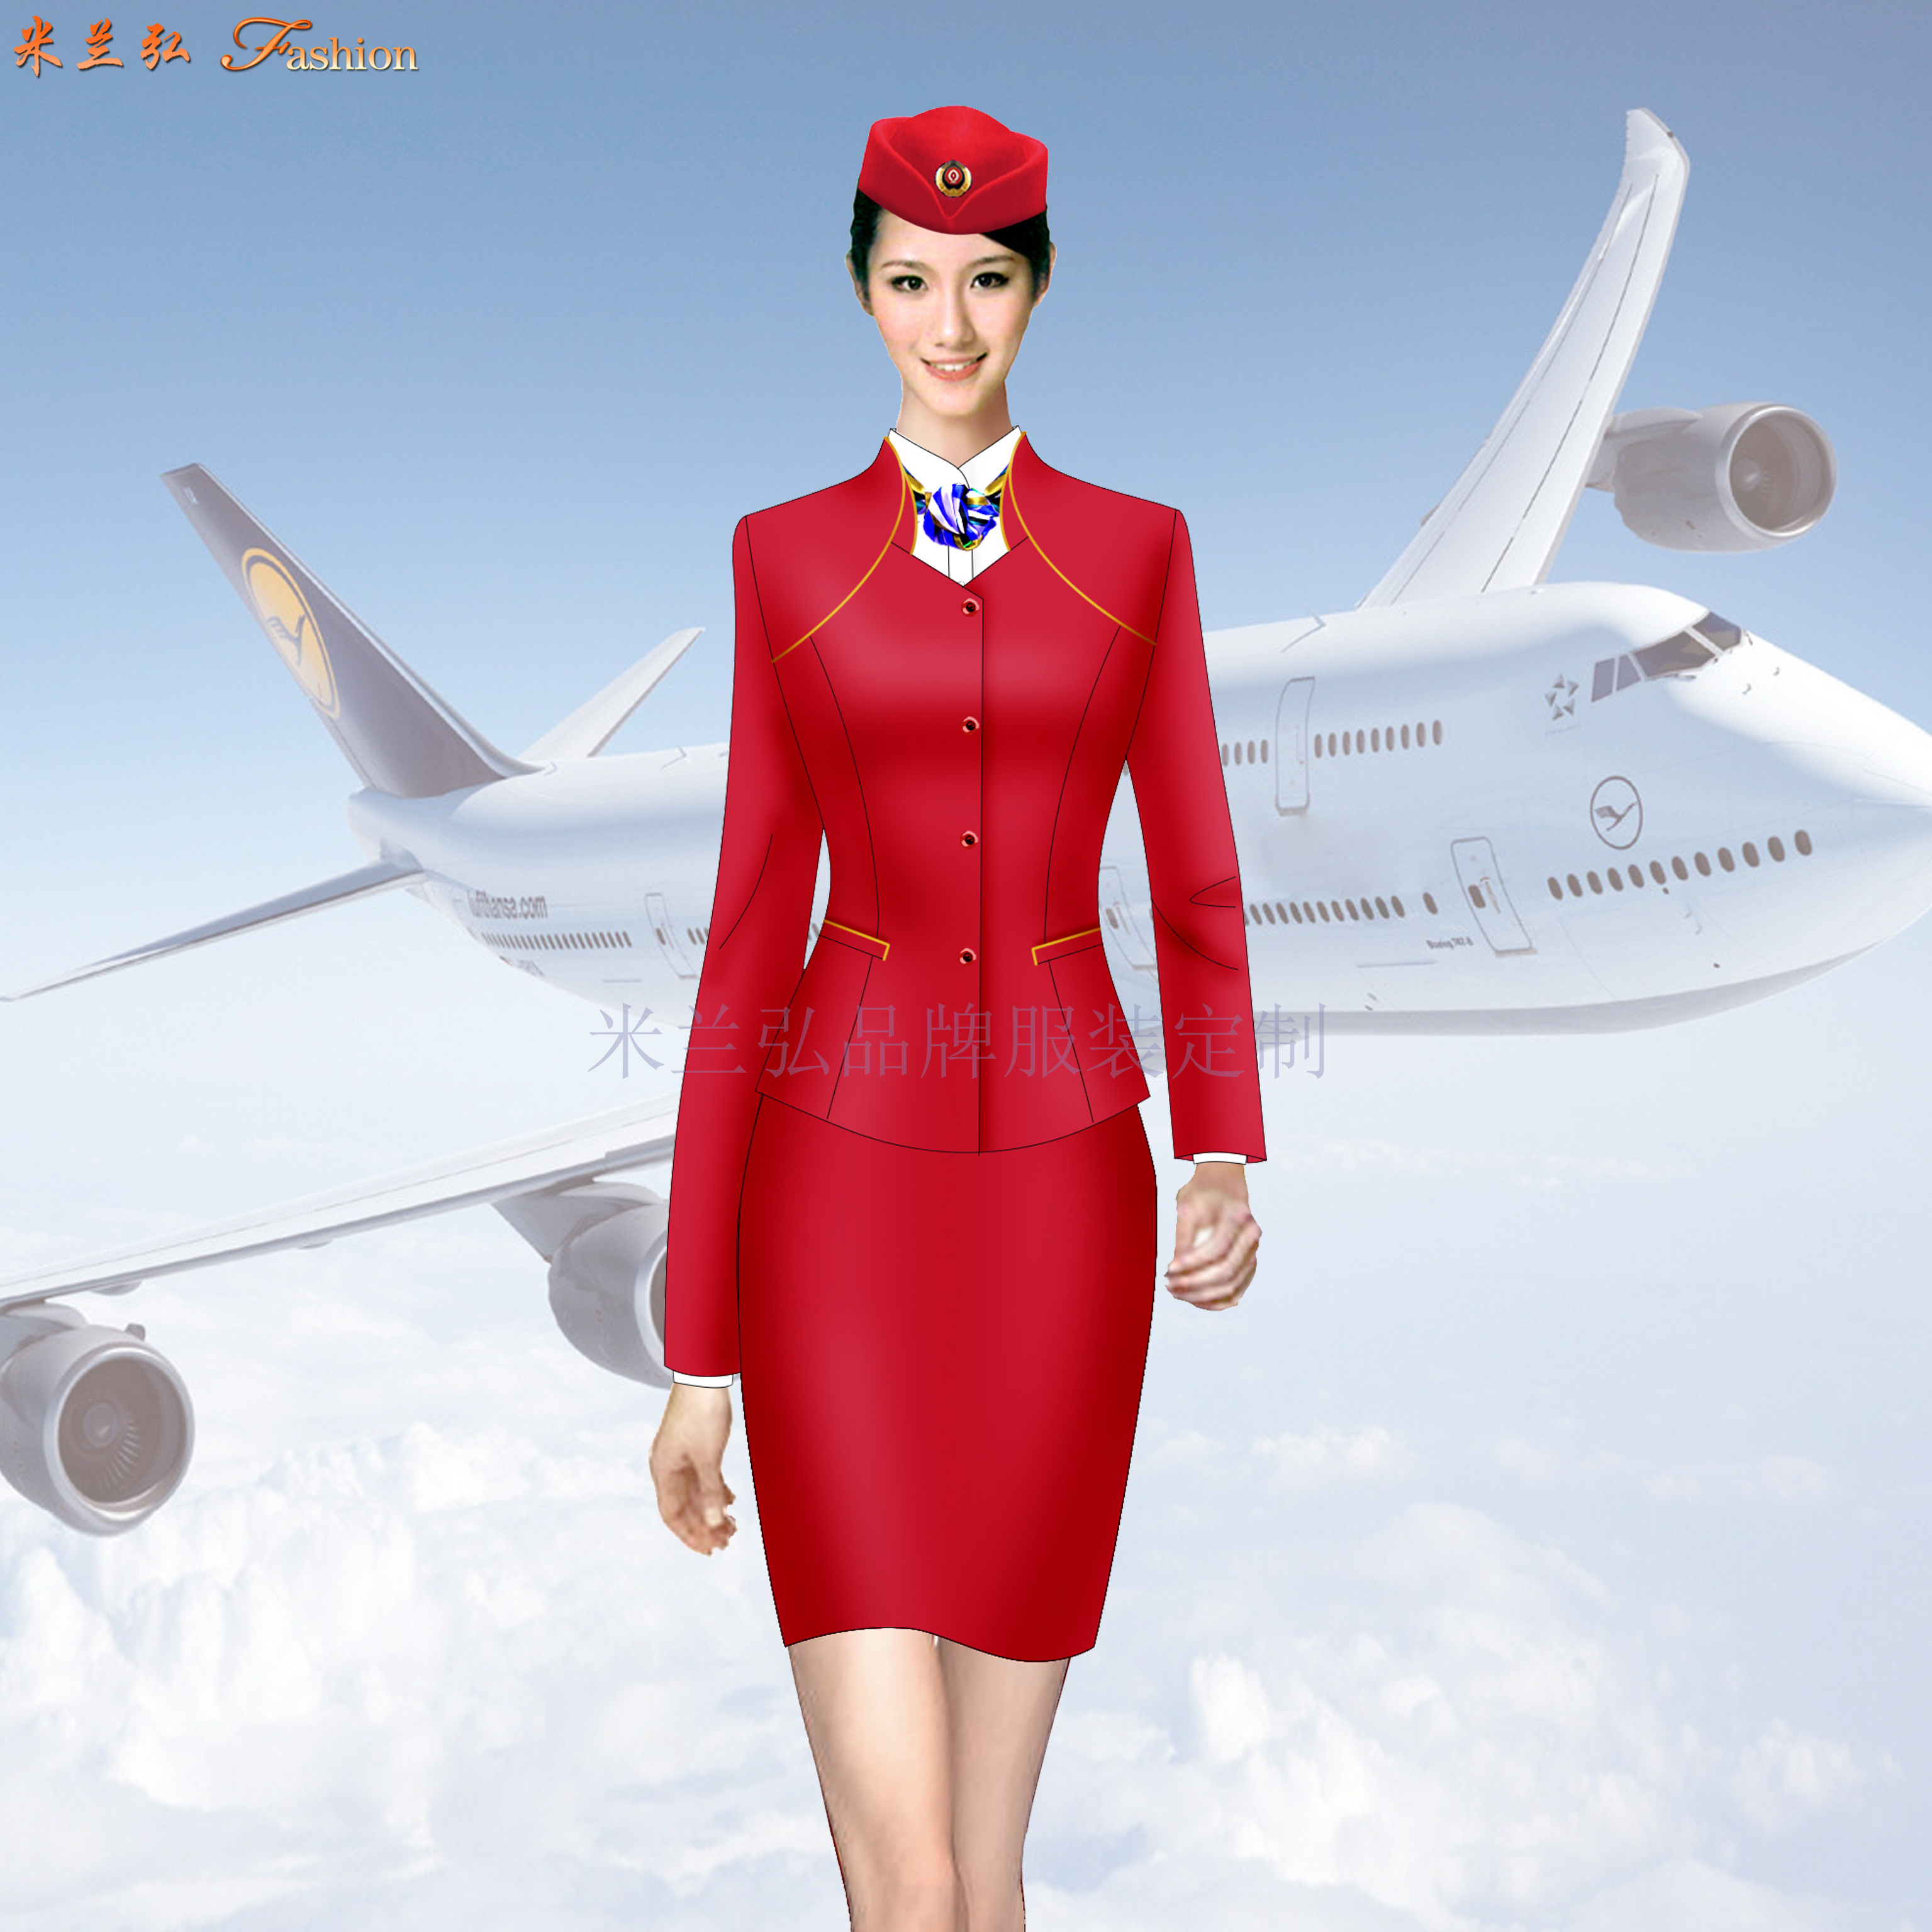 「空姐服」北京量體定制訂做潮流空姐服的誠信公司-米蘭弘服裝-3